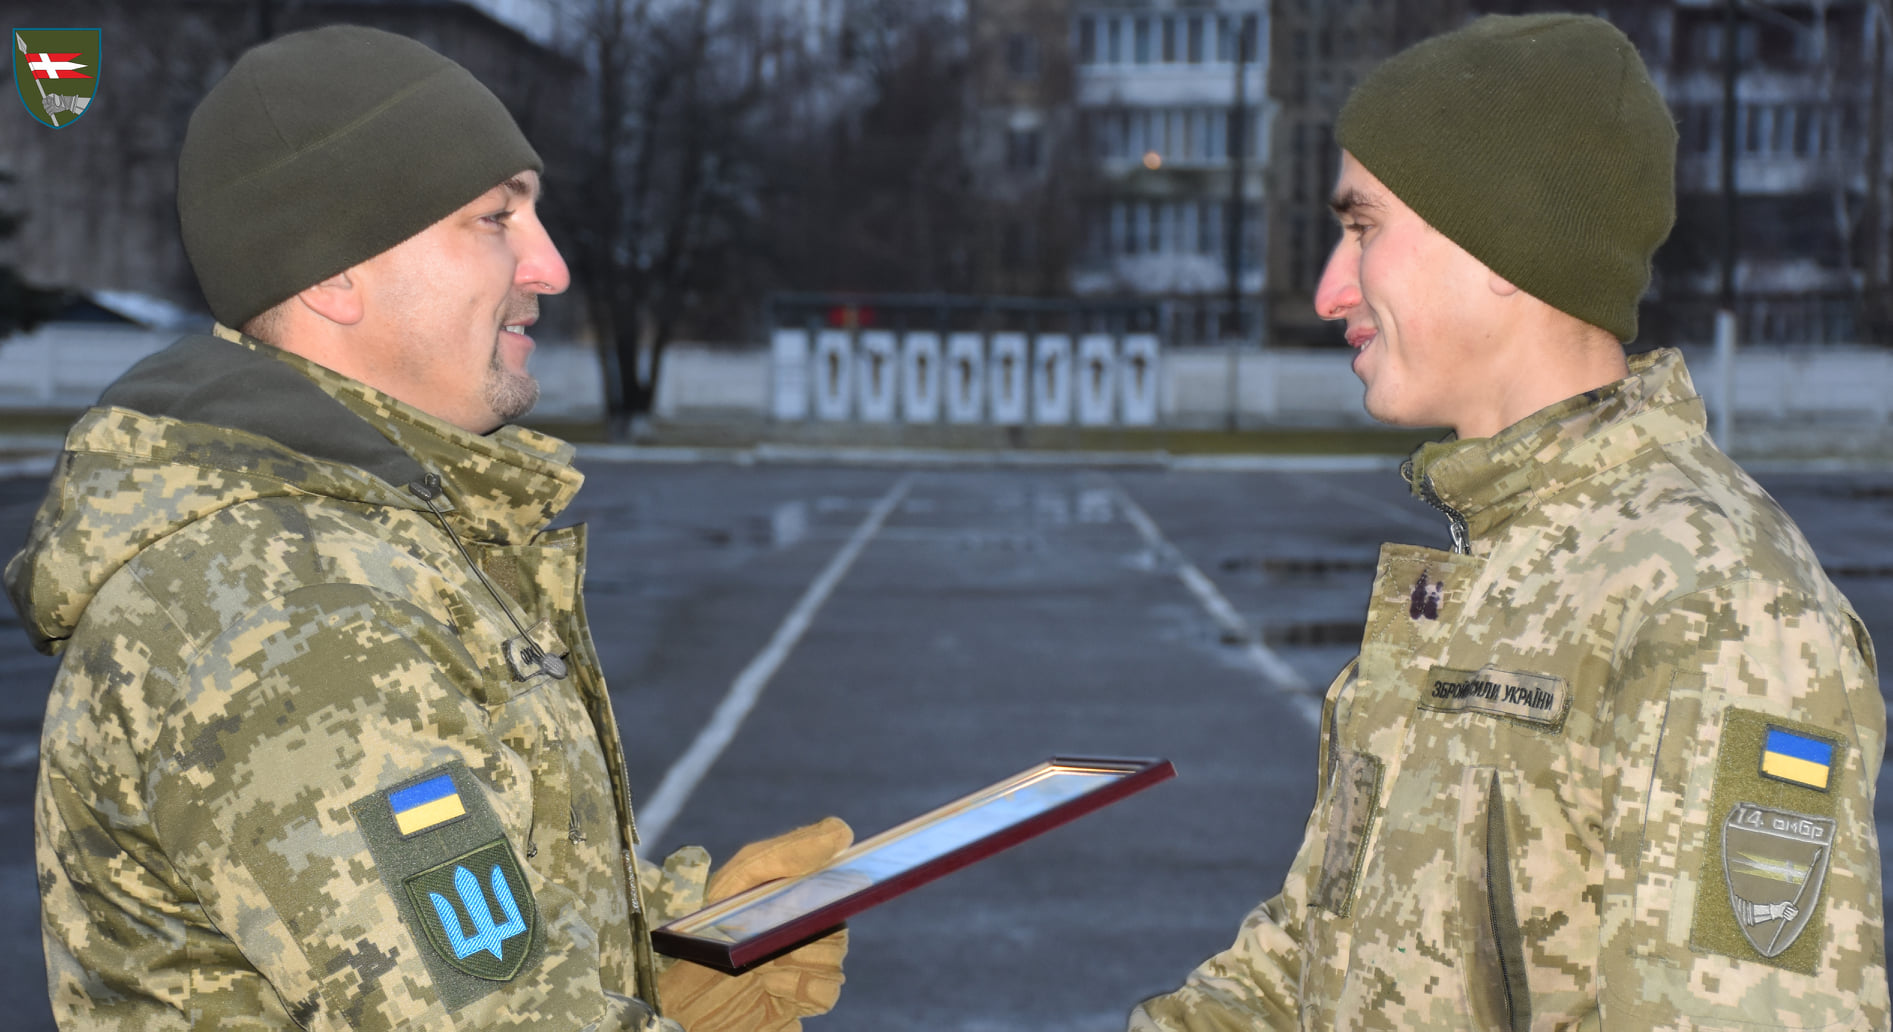 Пробіг 270 кілометрів: солдата з Володимира-Волинського нагородили за ультрамарафон